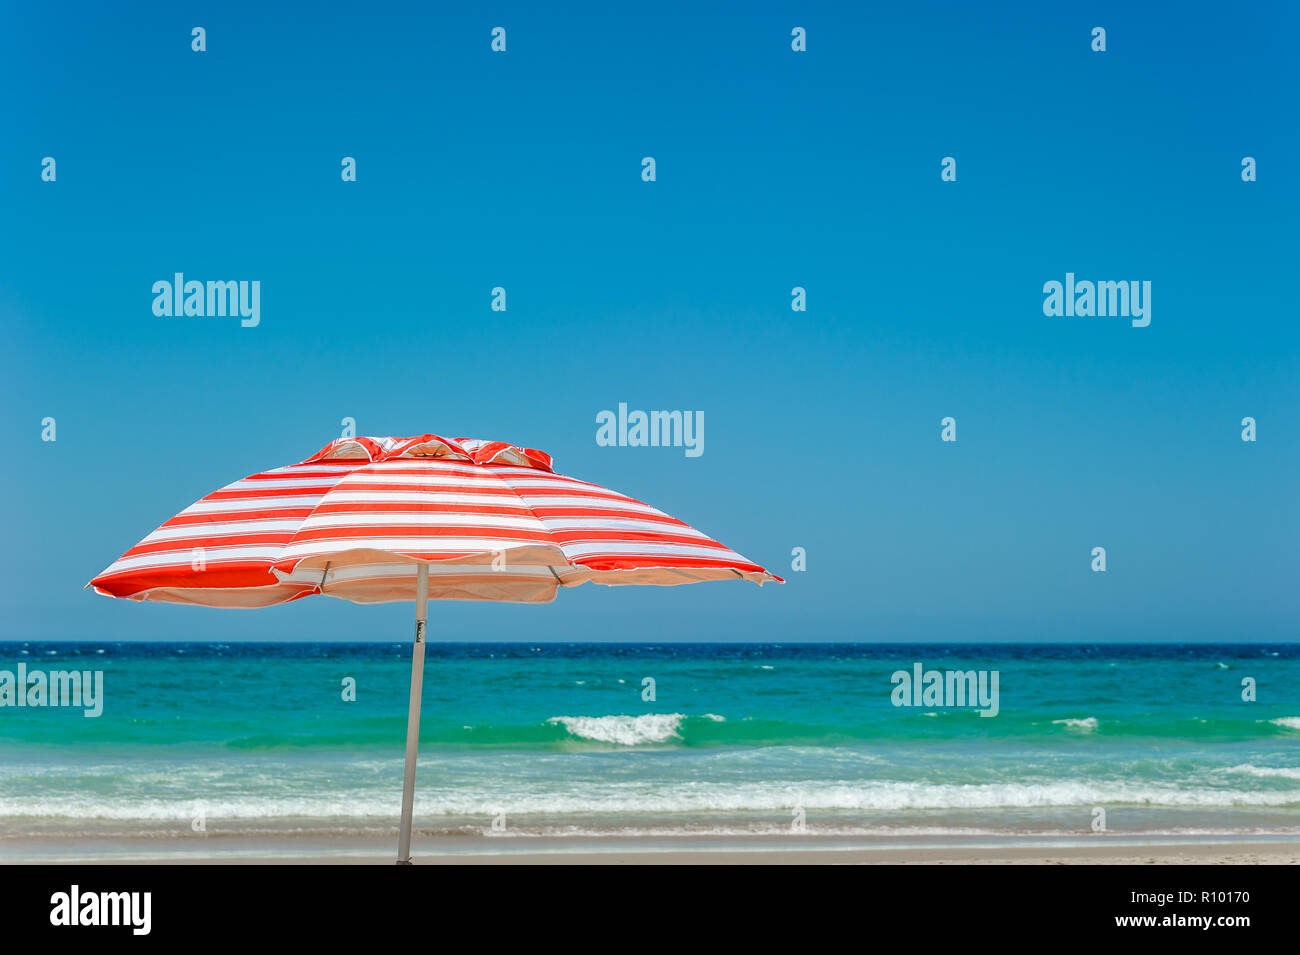 Mein rot-weiß gestreiften Sonnenschirm steht als iconic Symbol zu einem Strand Lebensweise und Kultur am Paradise Beach der Surfer an der Gold Coast. Stockfoto